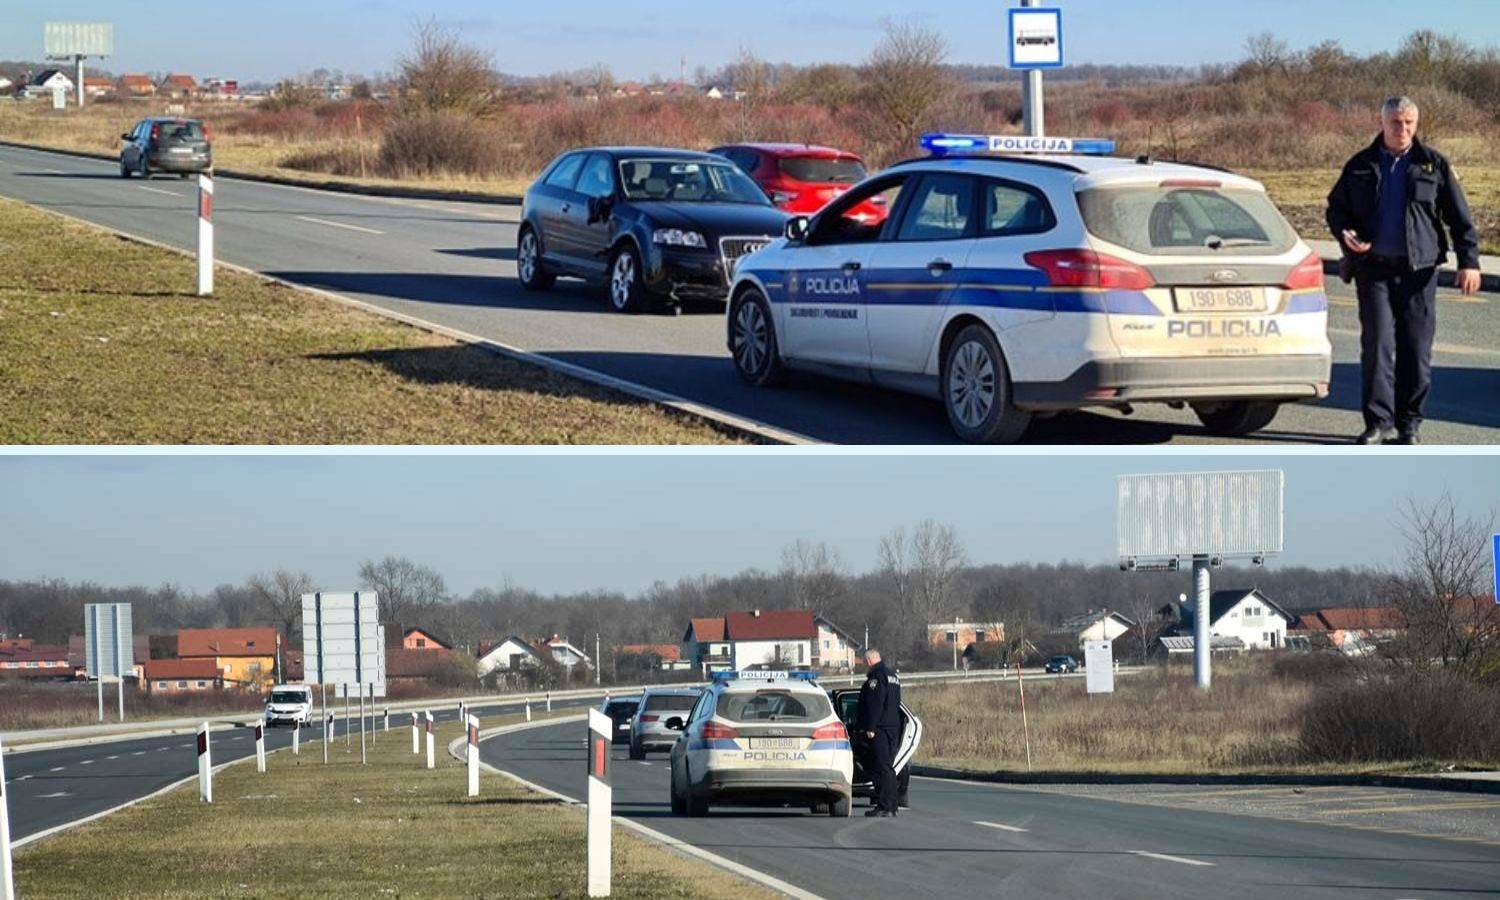 Kaos na obilaznici kod Velike Gorice: Hrpa slupanih auta, vozačica išla u krivom smjeru?!